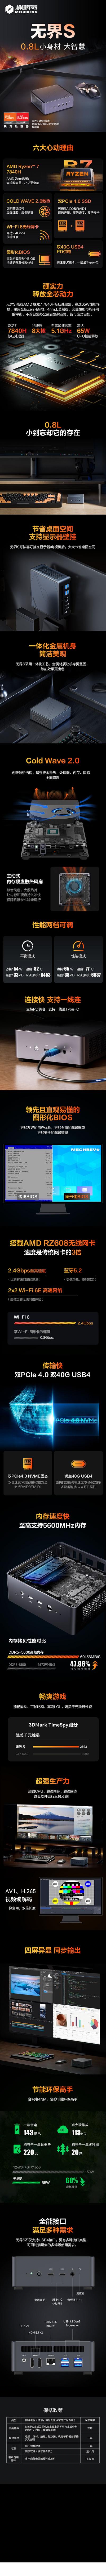 南门网 广告 海报 电商 电脑 长图 详情页 迷你电脑AMD平台主机详情 迷你主机 配件 3C